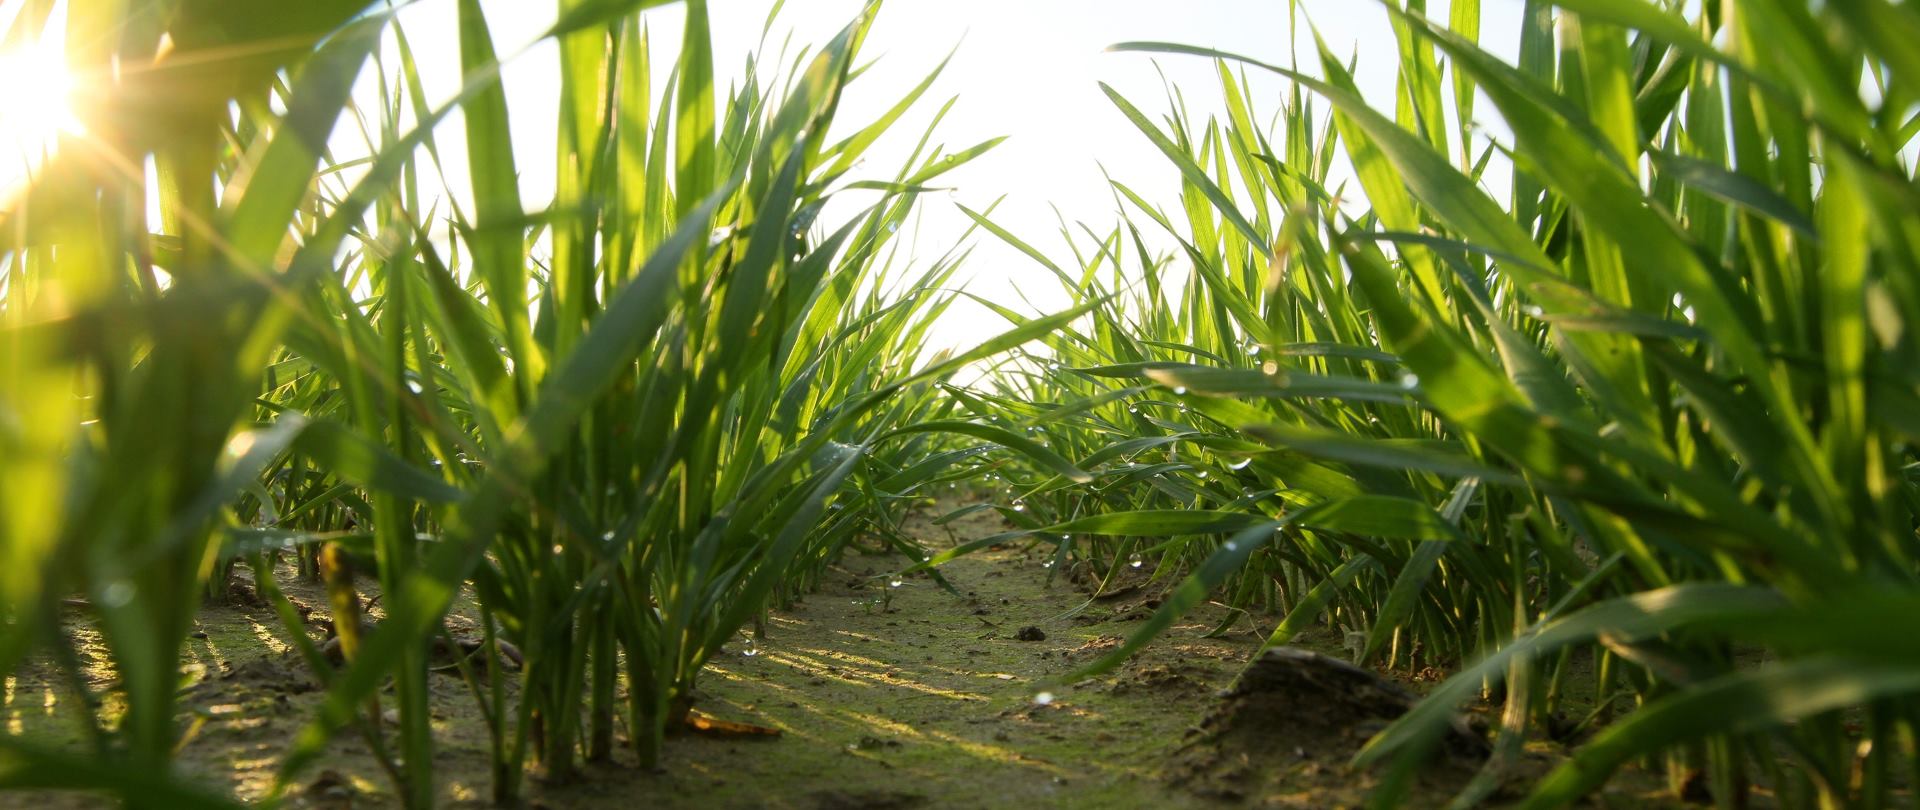 NALAZIŠTE U IZRAELU Uzgoja žitarica počeo 11 tisućljeća prije razdoblja poljoprivrede?